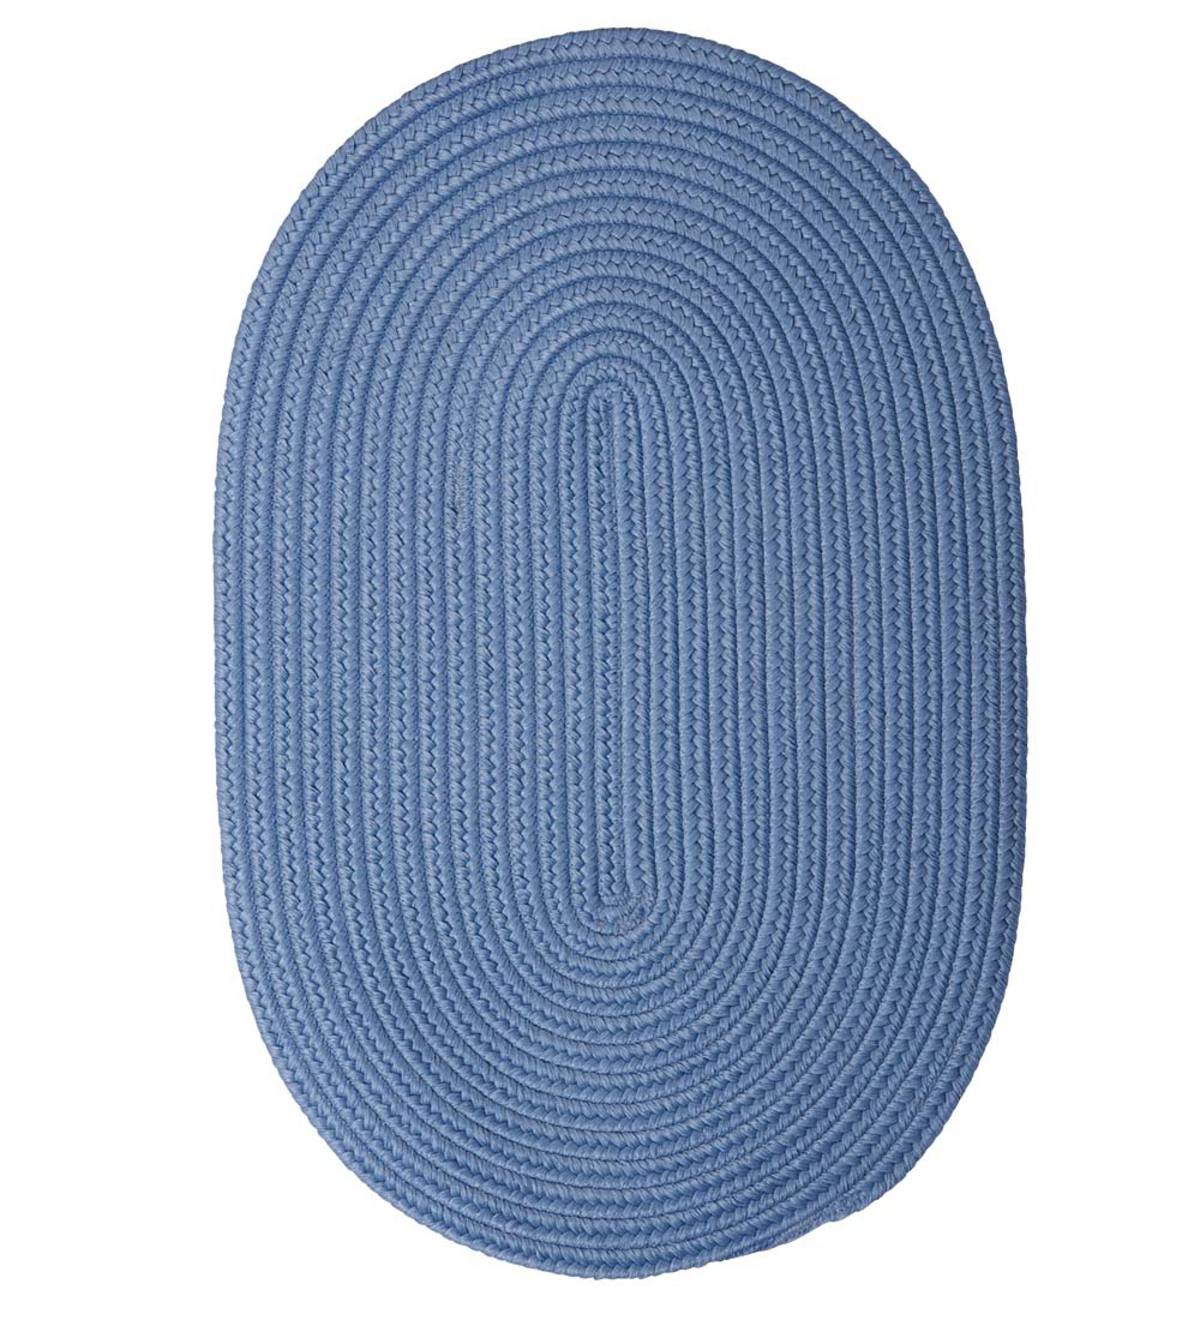 8' x 10' Oval Braided Rug - Blue